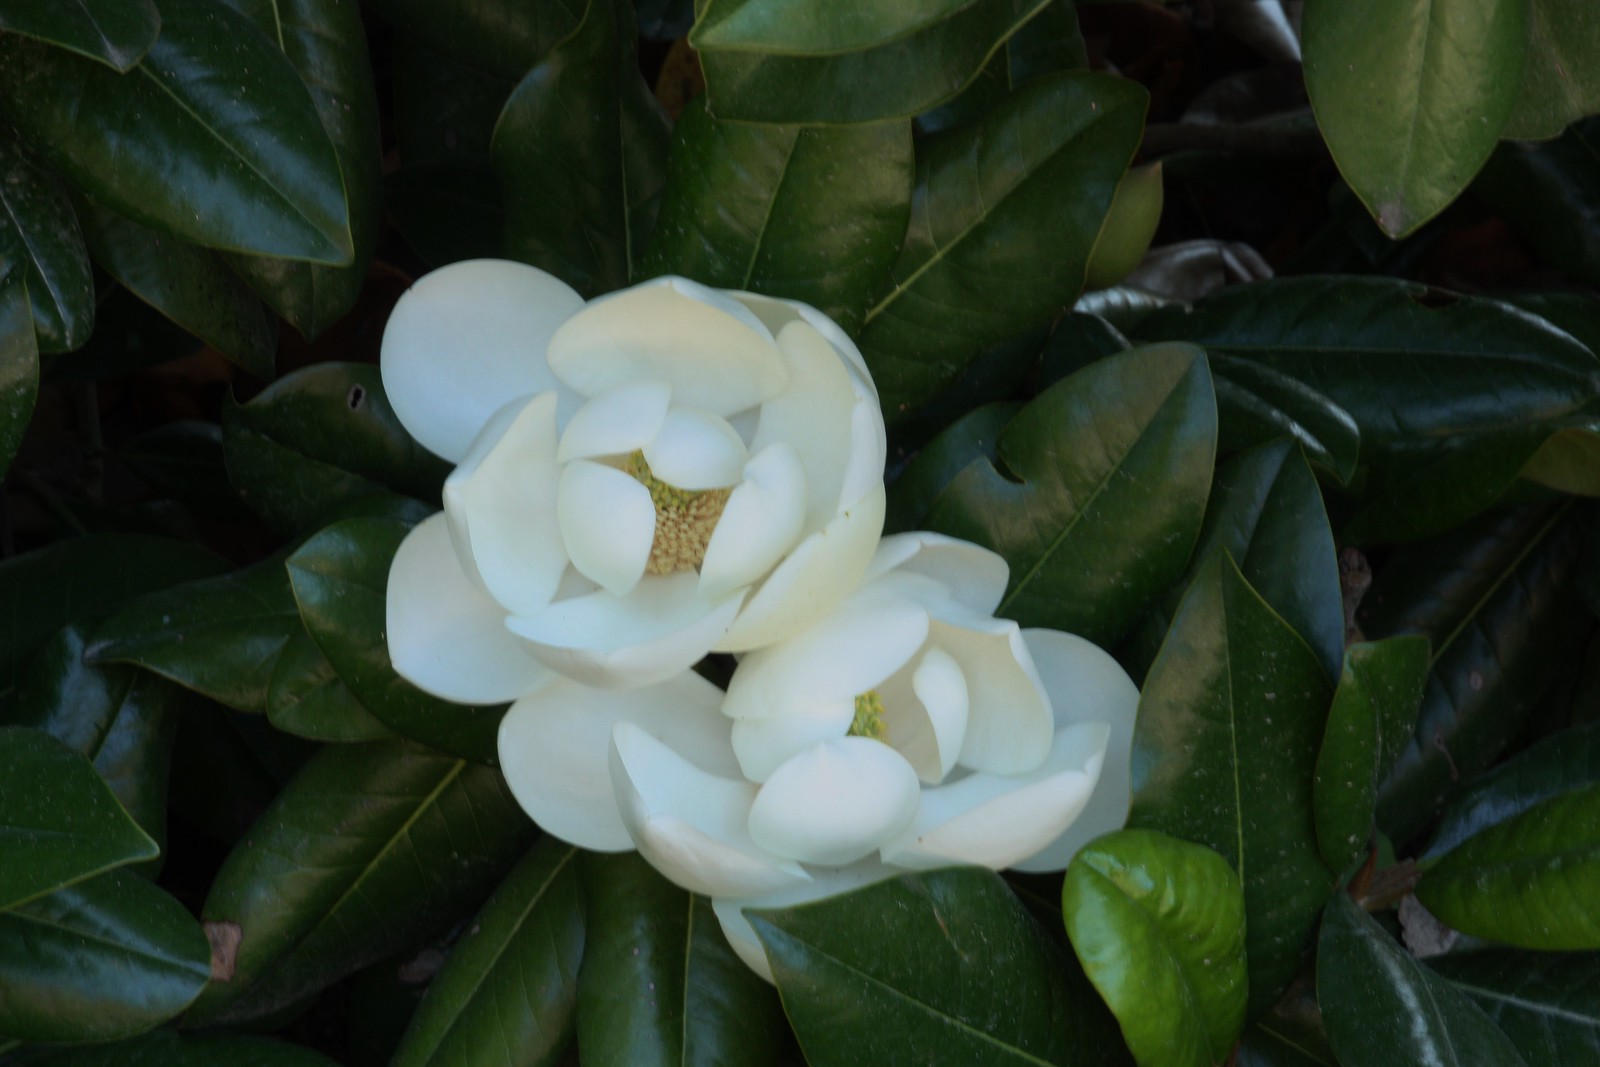 Magnolia at Mount Vernon